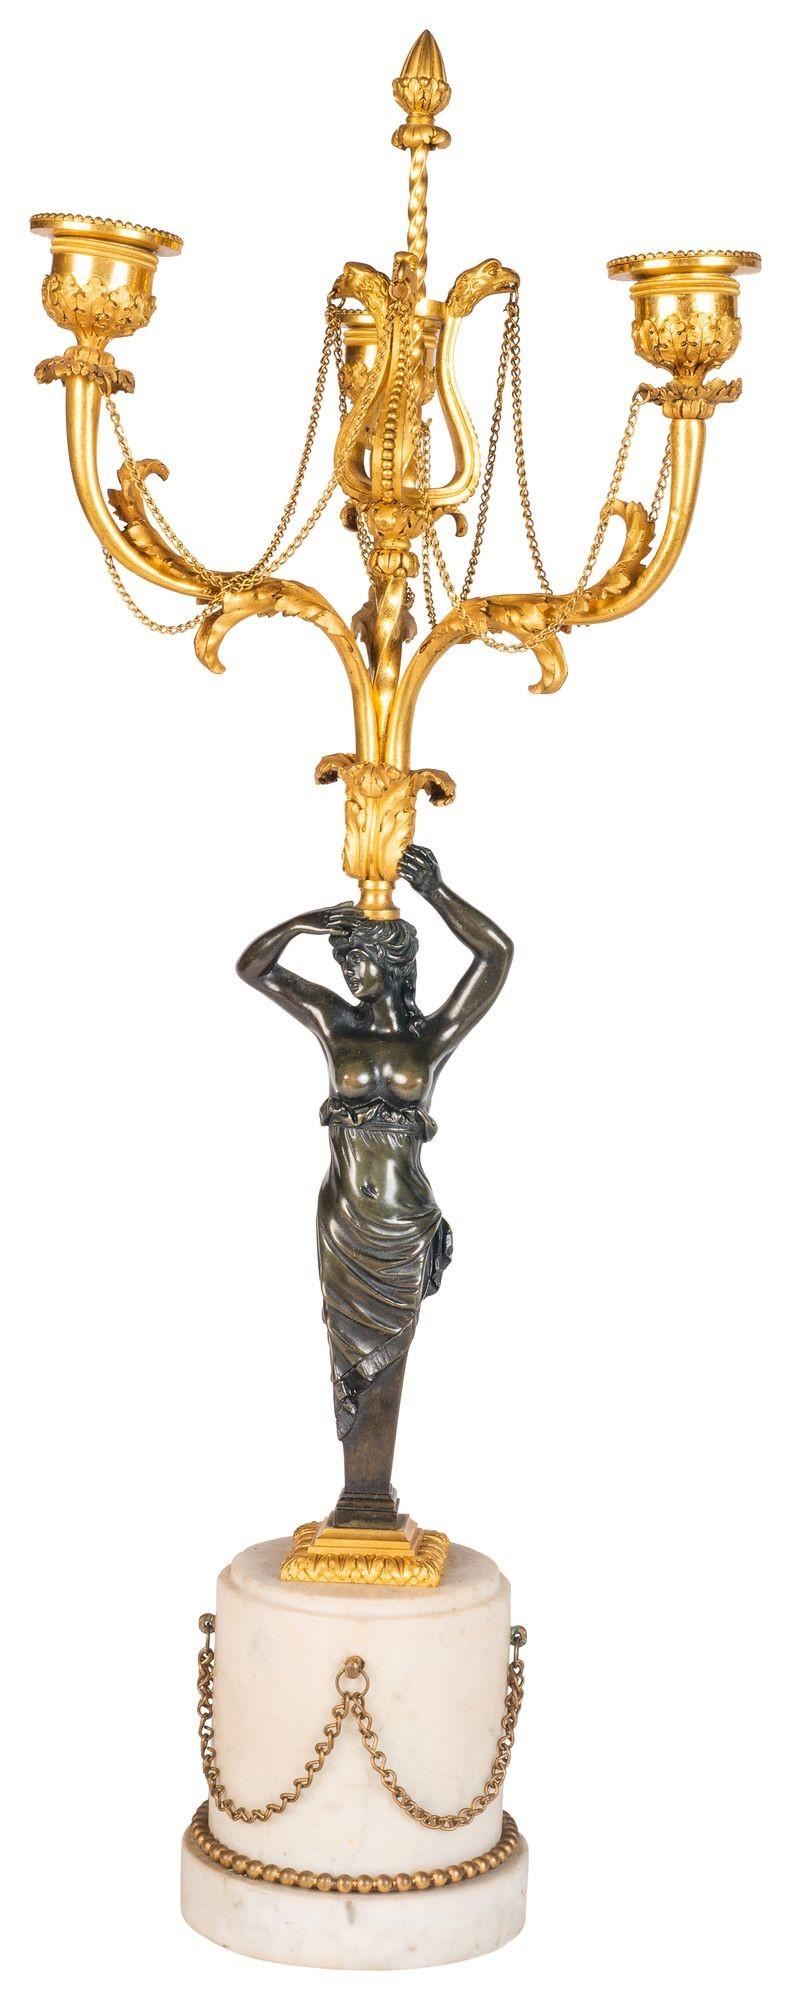 Ein elegantes Paar Bronze und vergoldetem Ormolu drei Branch Kandelaber, jeweils mit Schwan Hals und patiniert Bronze Monopodia unterstützt, montiert auf Carrera Marmor Sockel mit Kette Swag Dekoration.

Charge 74